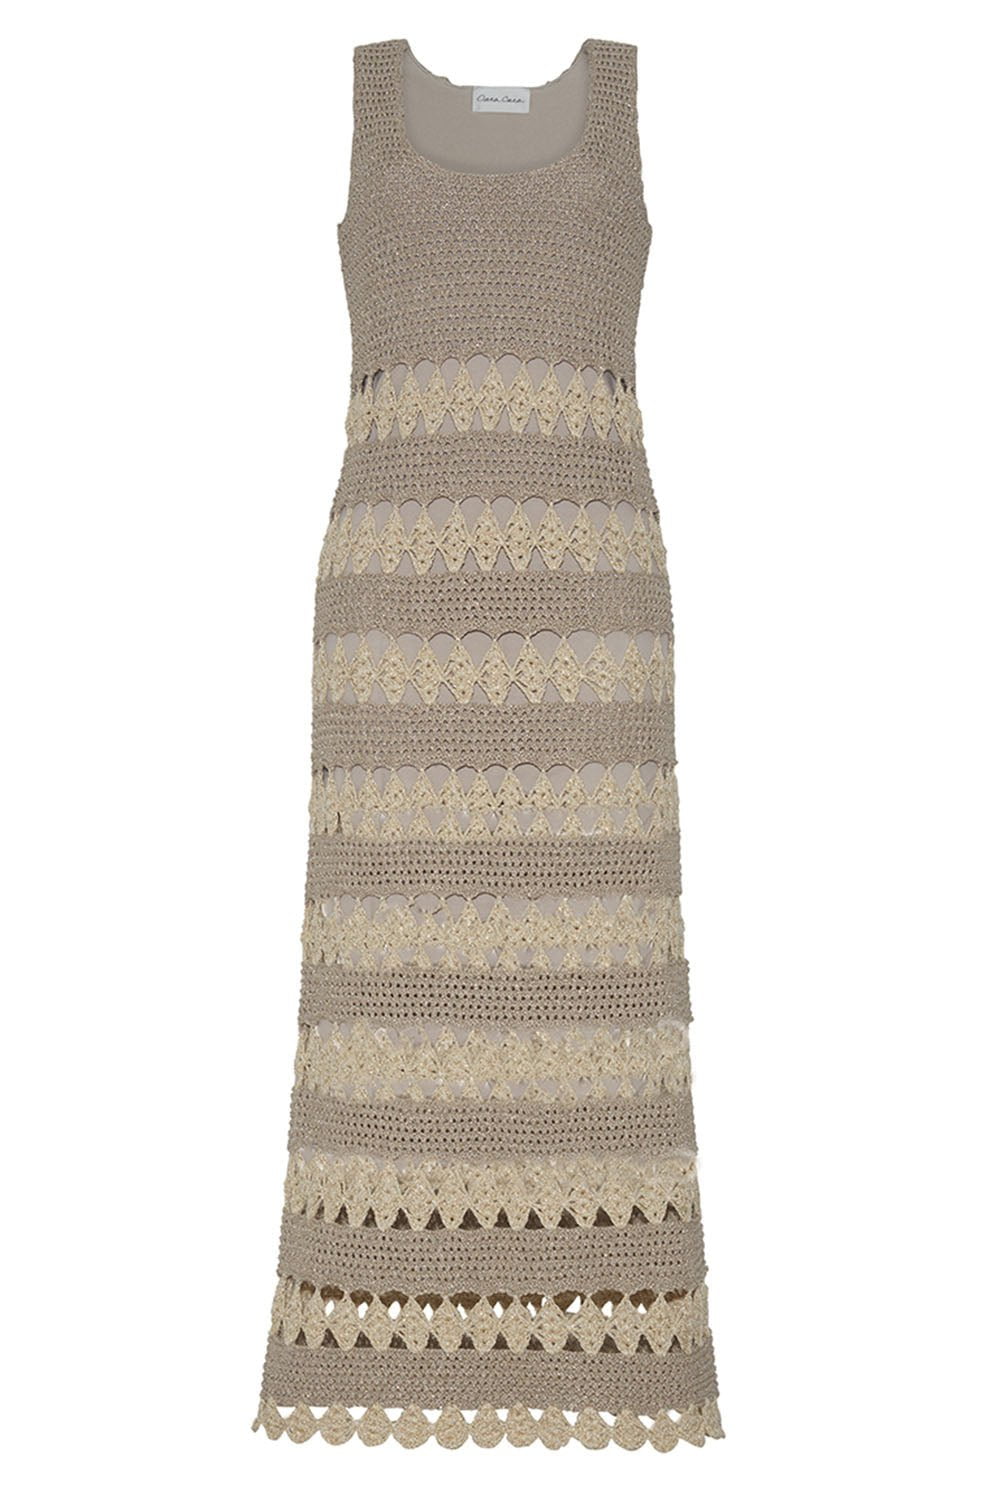 CARA CARA-Joan Crochet Dress-